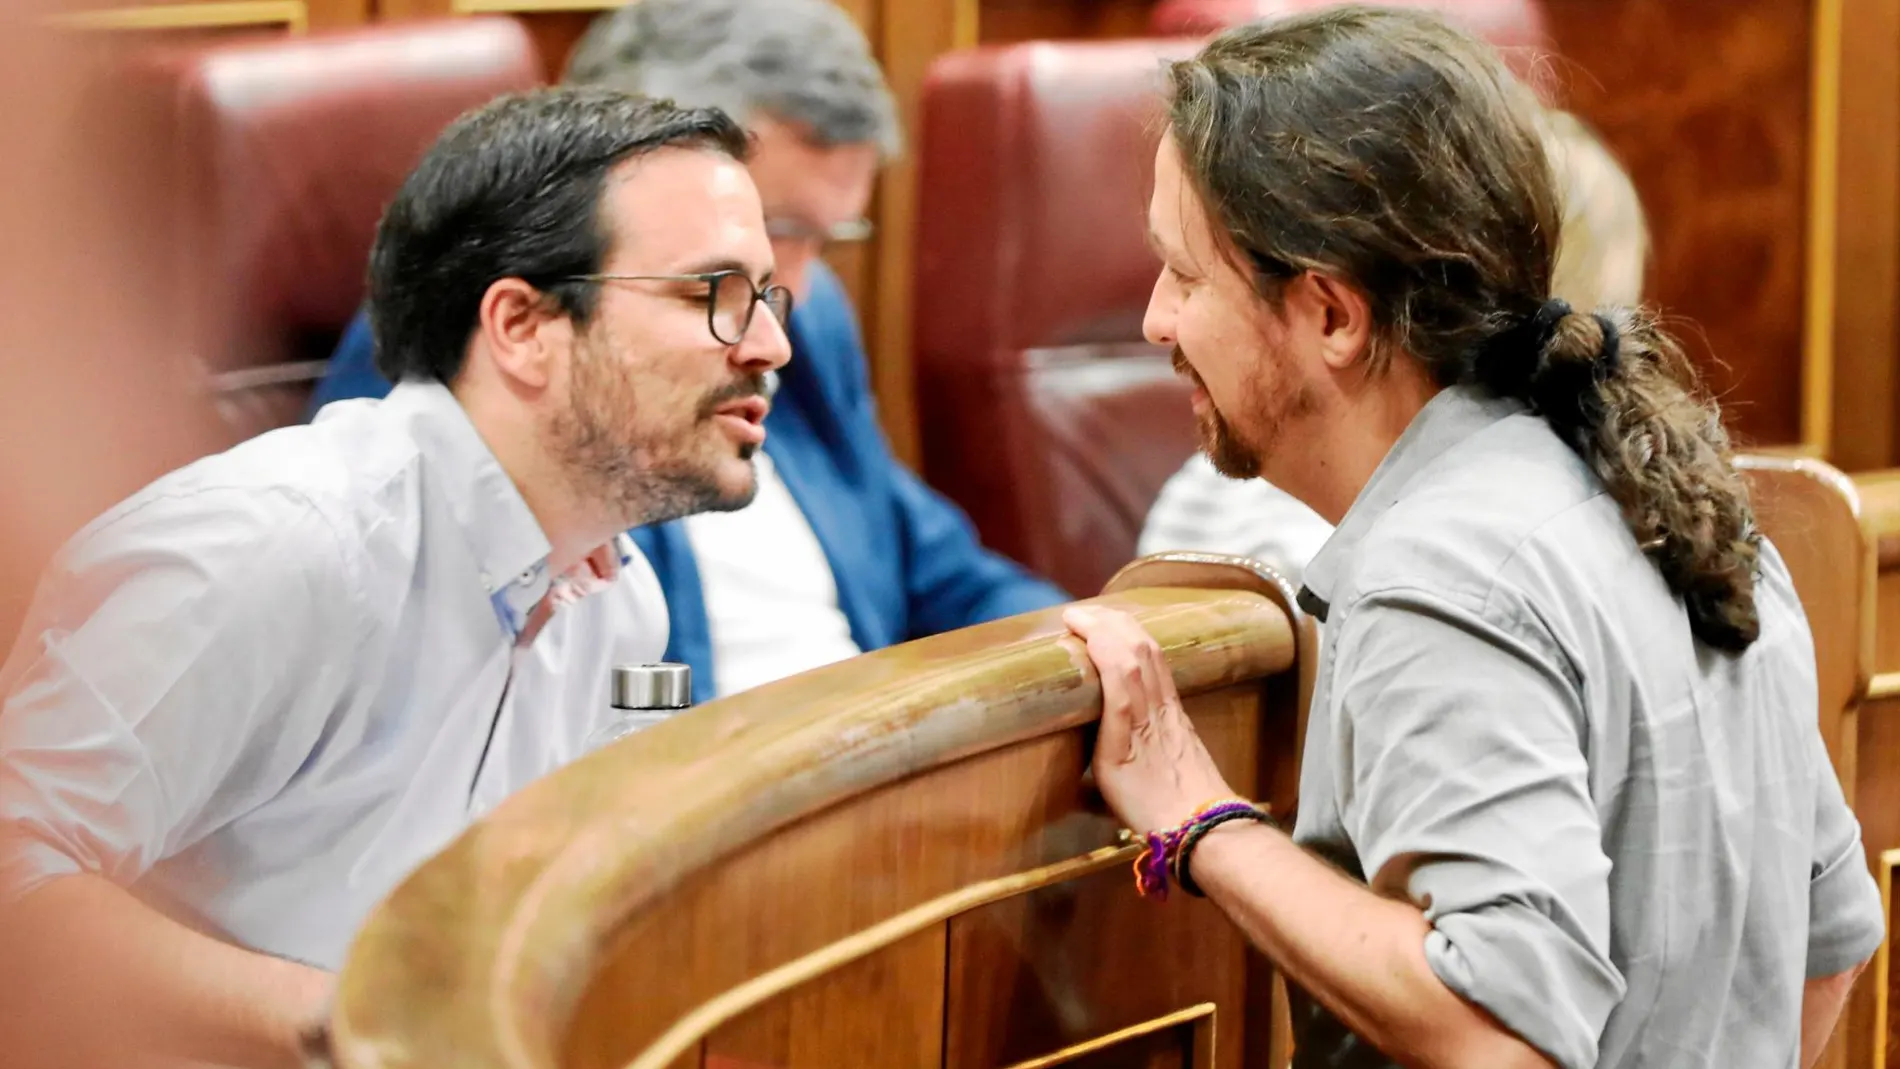 El varapalo de IU Madrid a Garzón debilita aún más su pacto con Iglesias